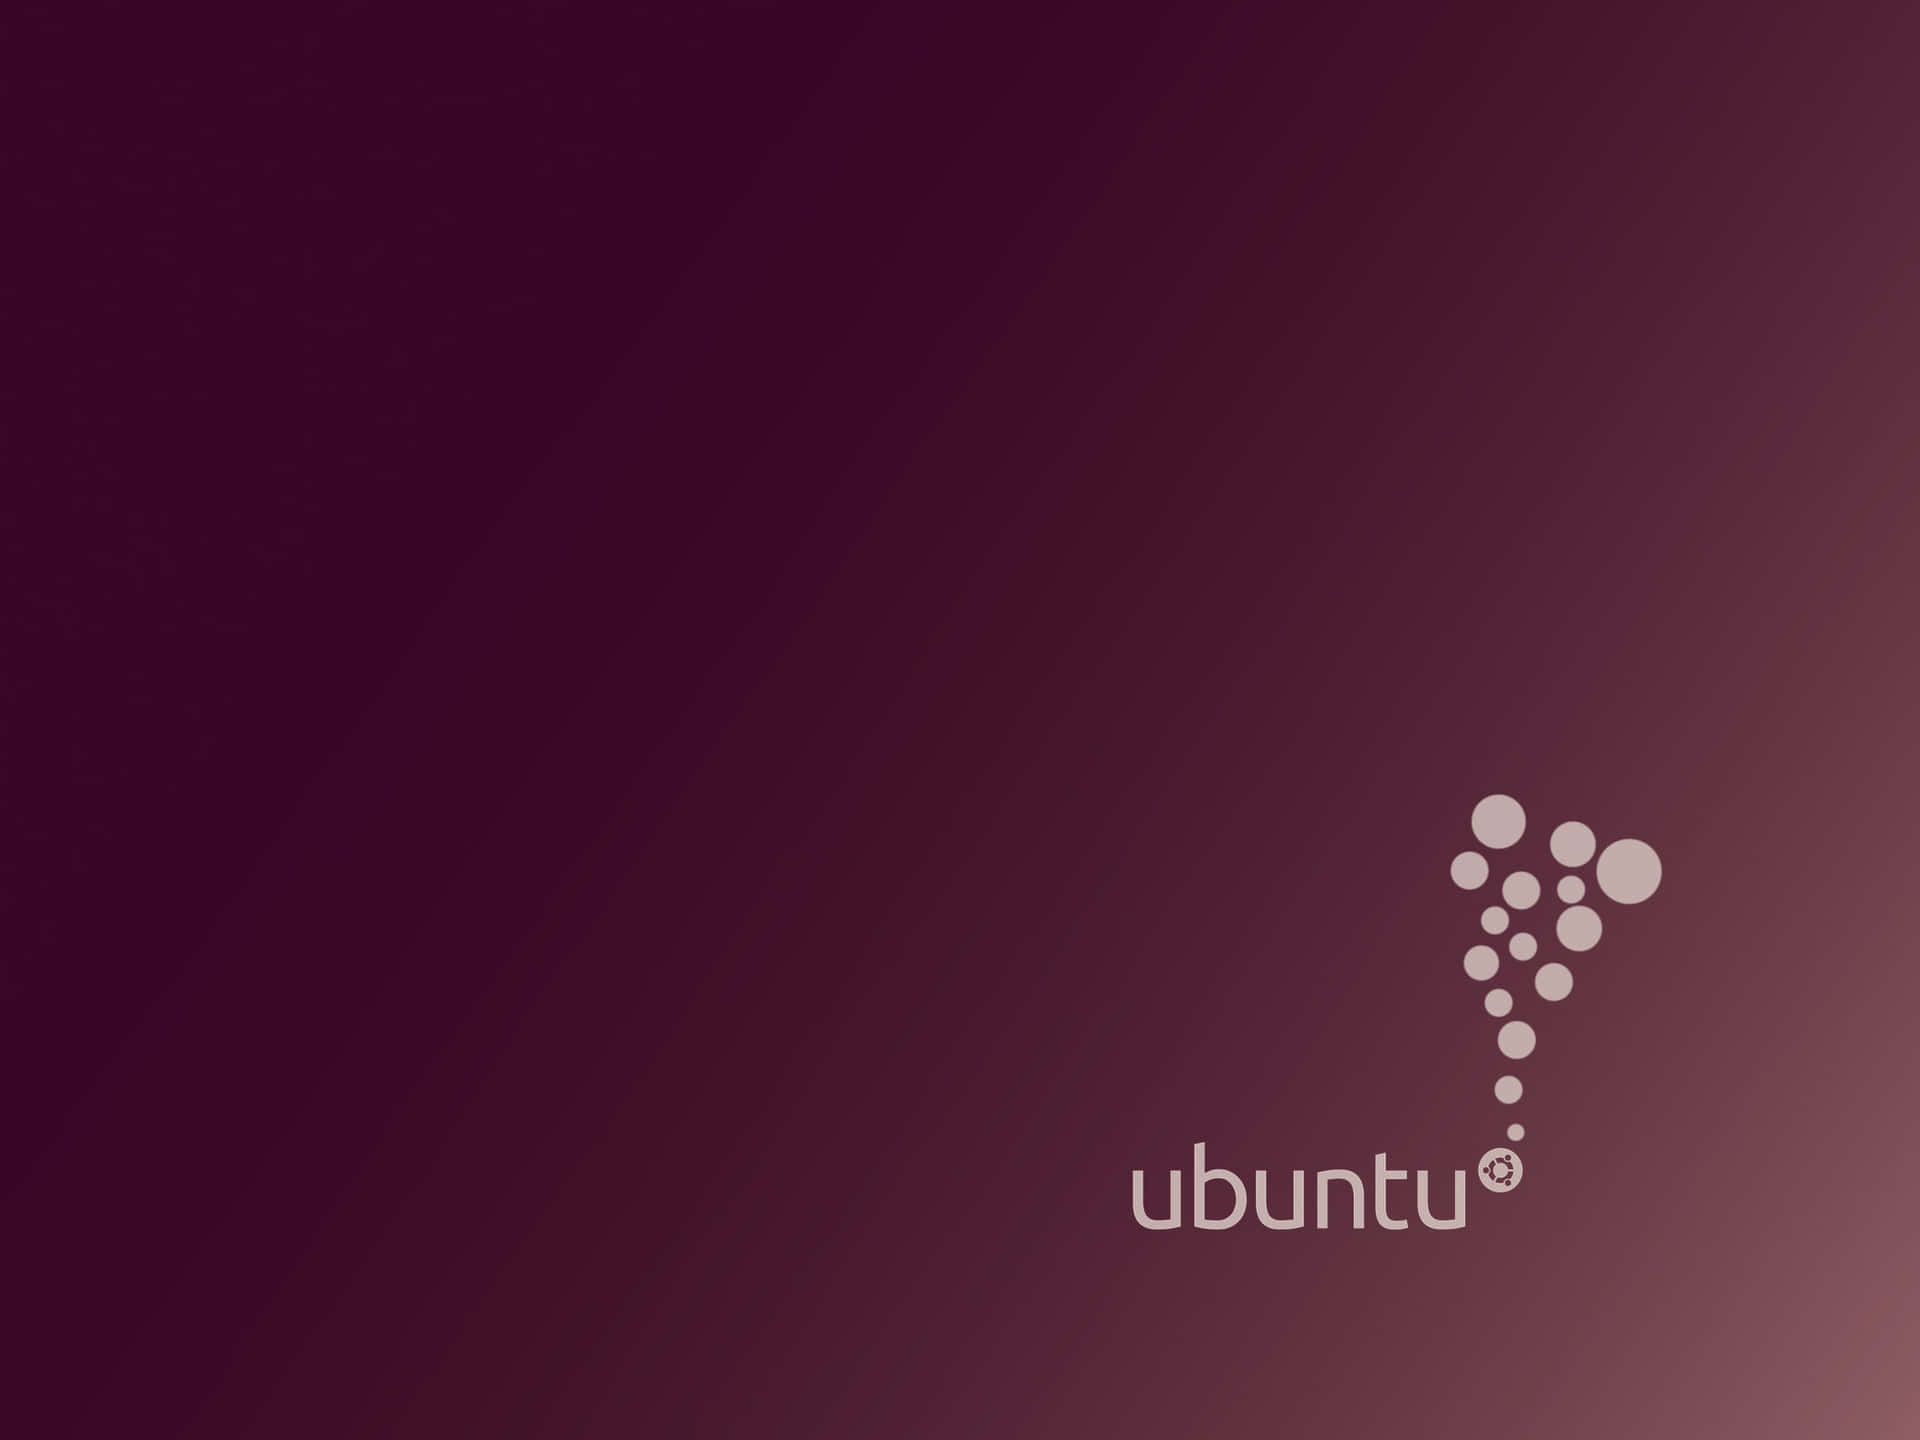 Holensie Das Beste Aus Ihrem Ubuntu-erlebnis Heraus.